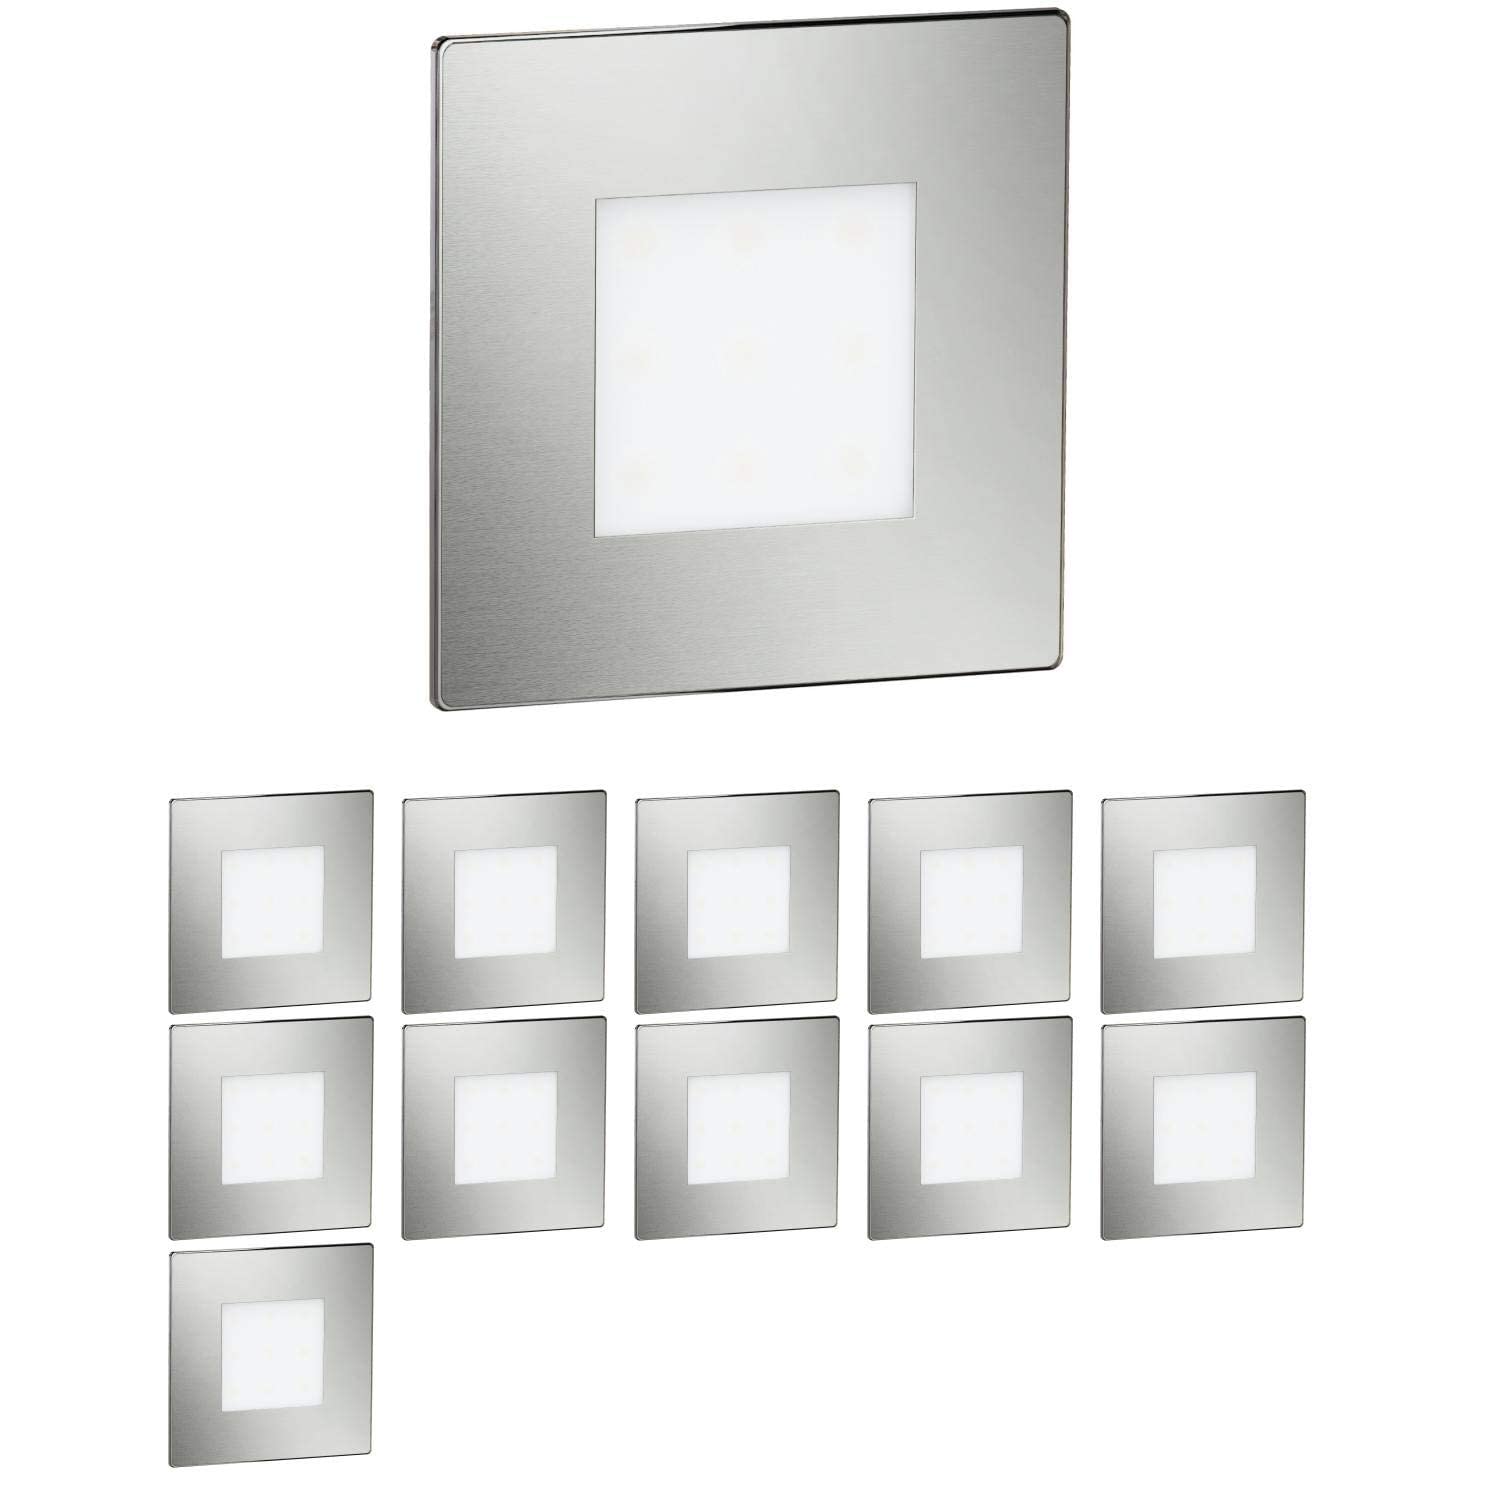 ledscom.de 12 Stück LED Treppenlicht/Wandeinbauleuchte FEX für innen und außen, eckig, edelstahl, 85 x 85mm, warmweiß